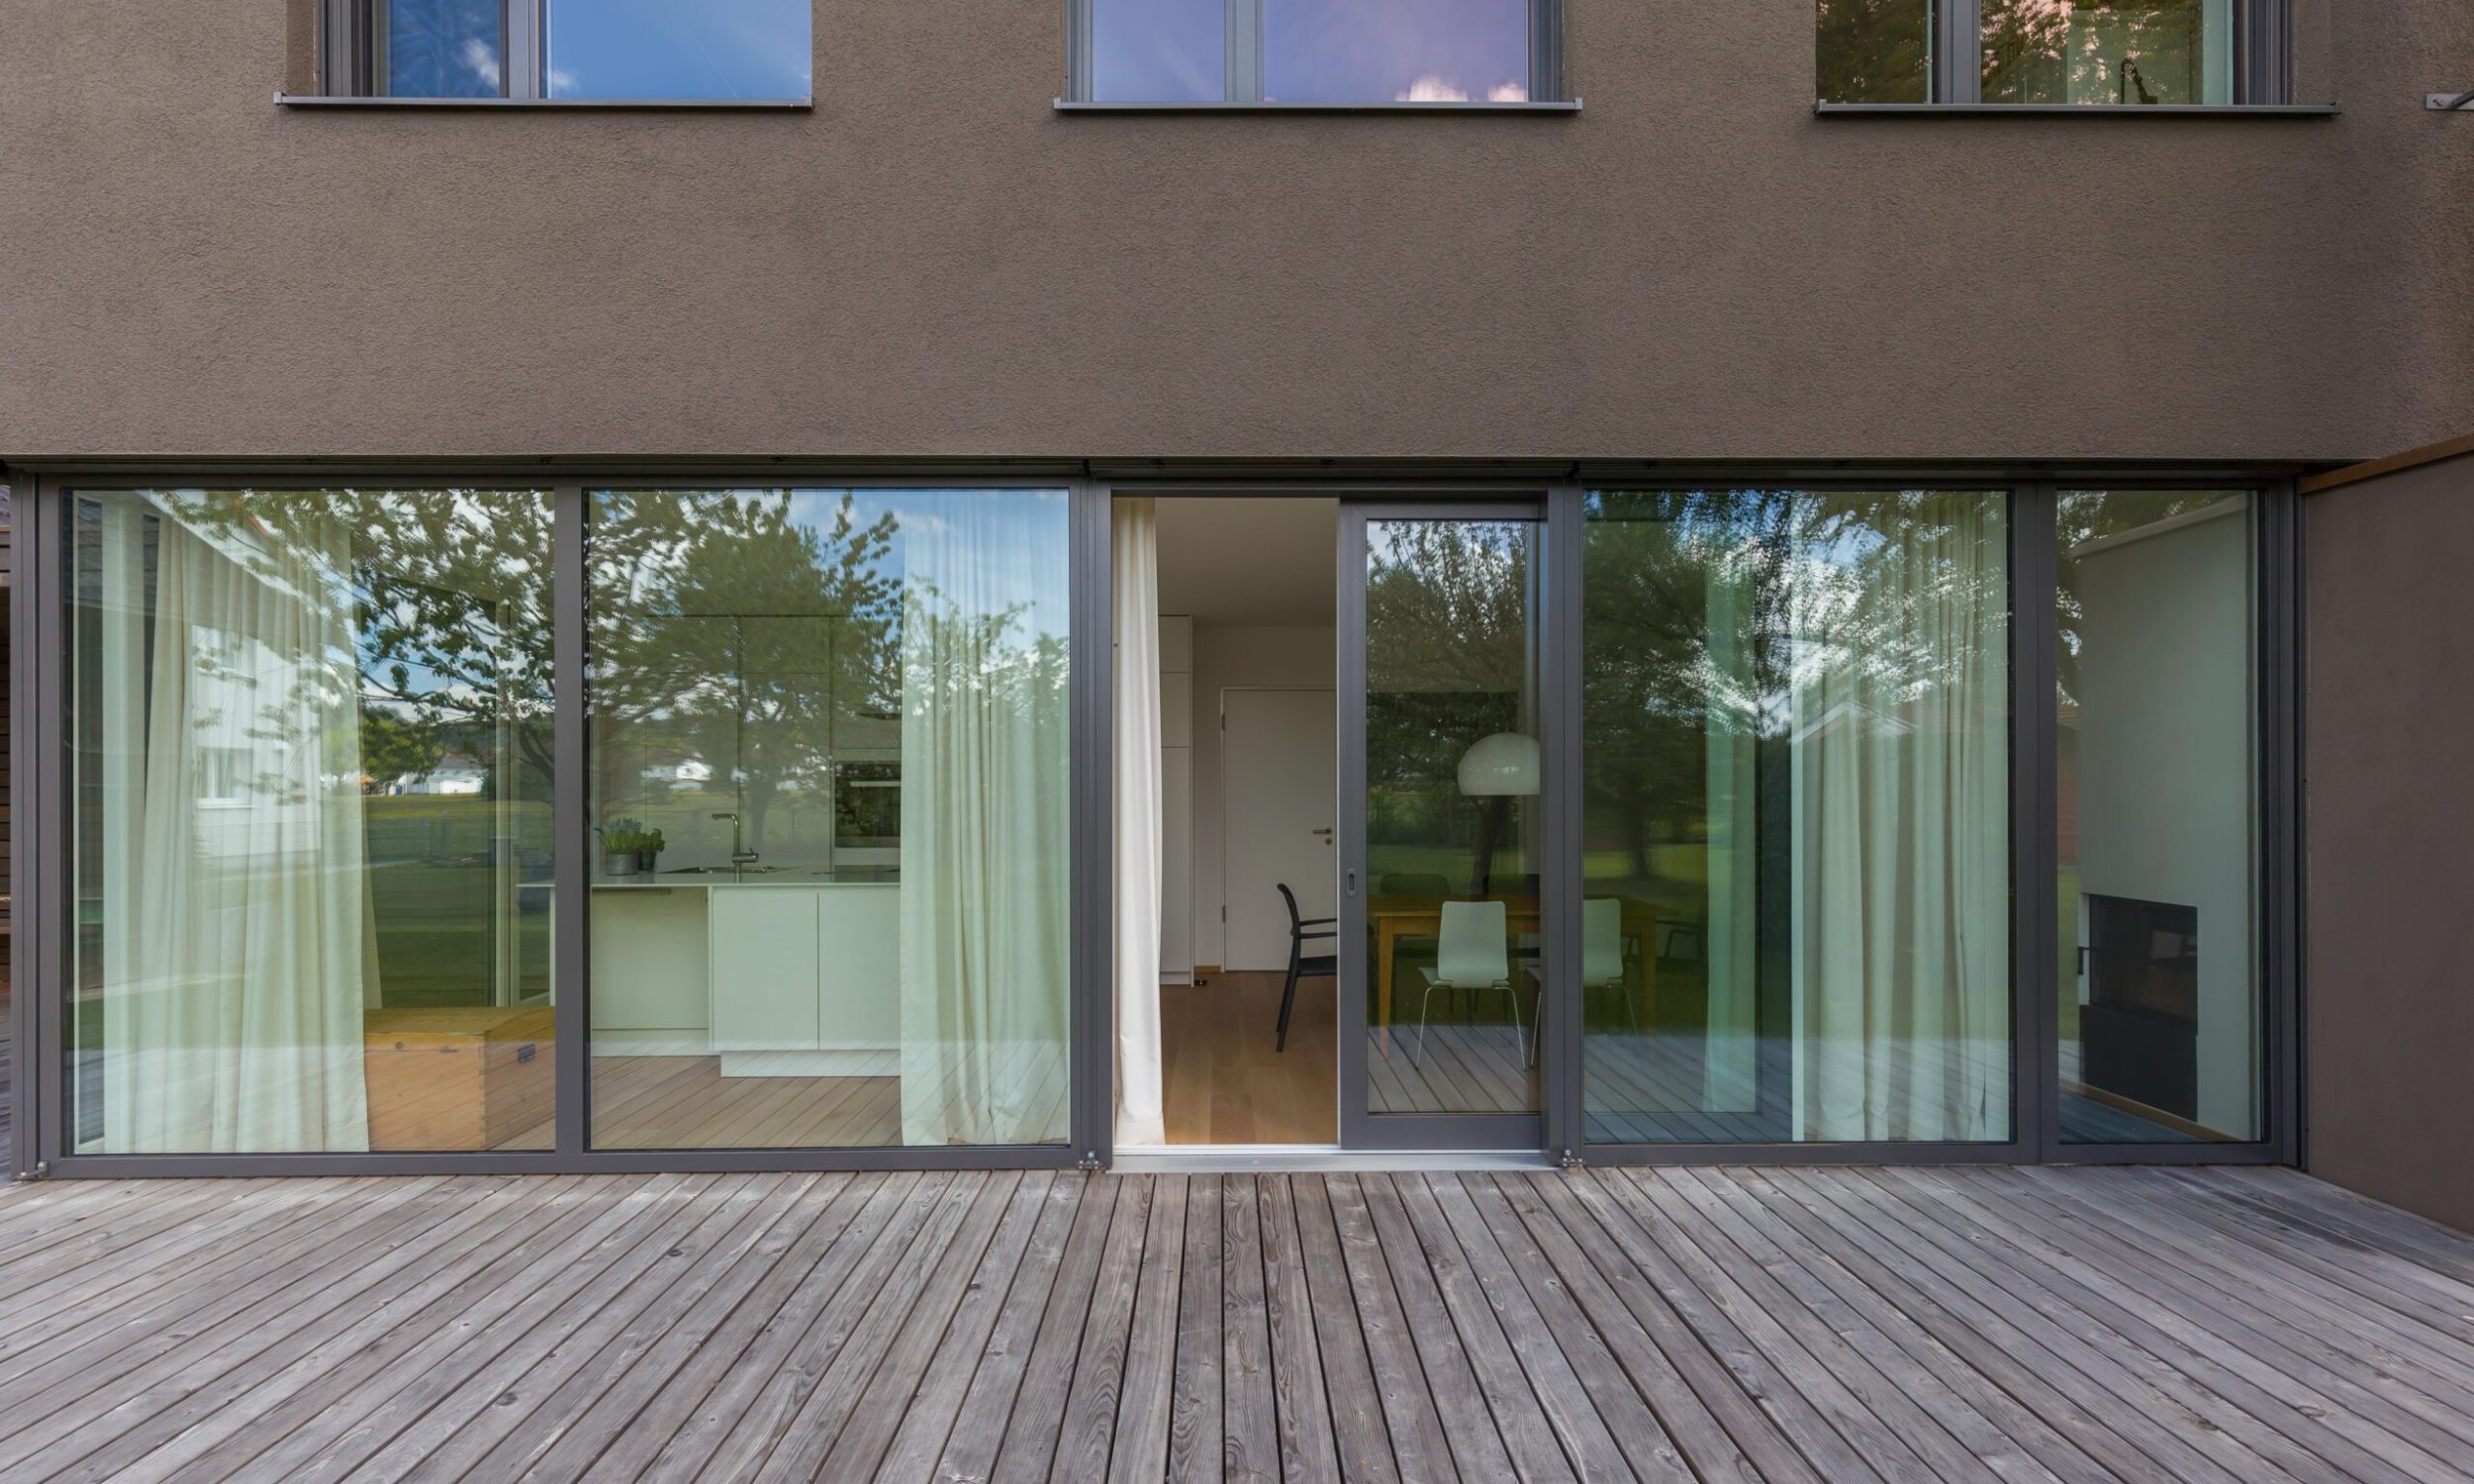 Einfamilienhaus in Ottobeuren; Architekt: Harald Schädler, Memmingen; Bild: Marc Brugger